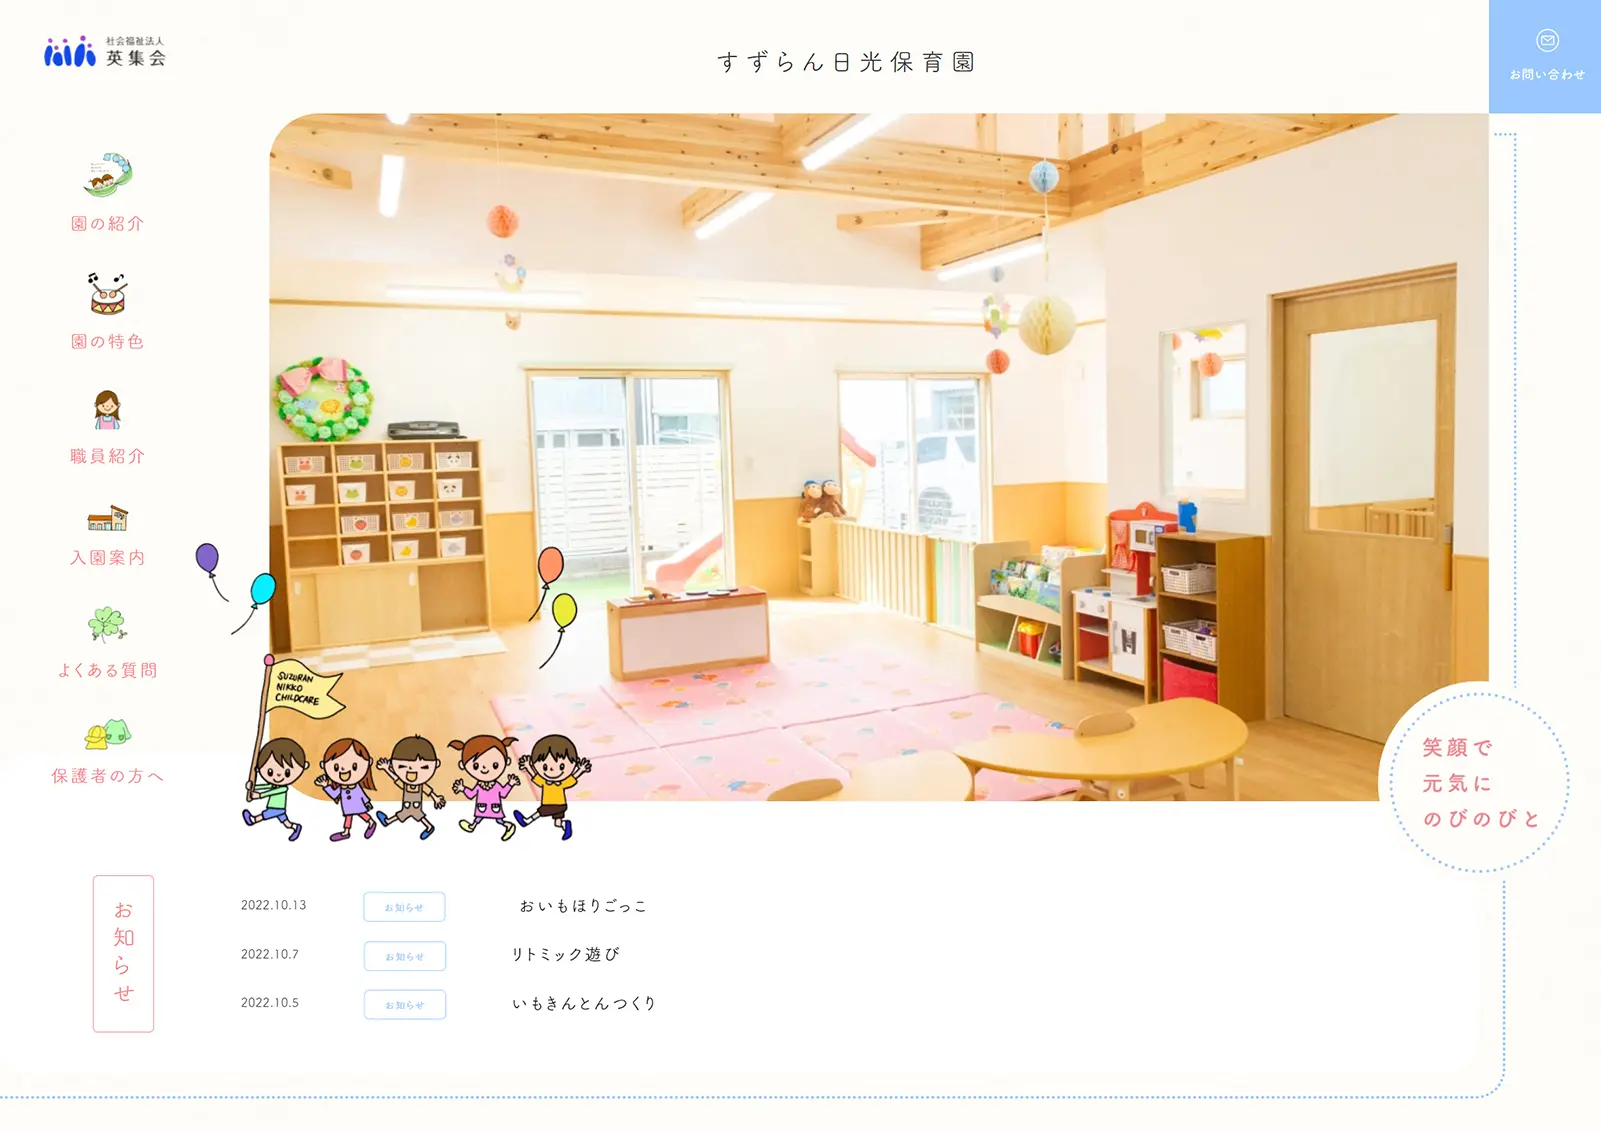 すずらん日光保育園のホームページ,岐阜市の小規模保育園